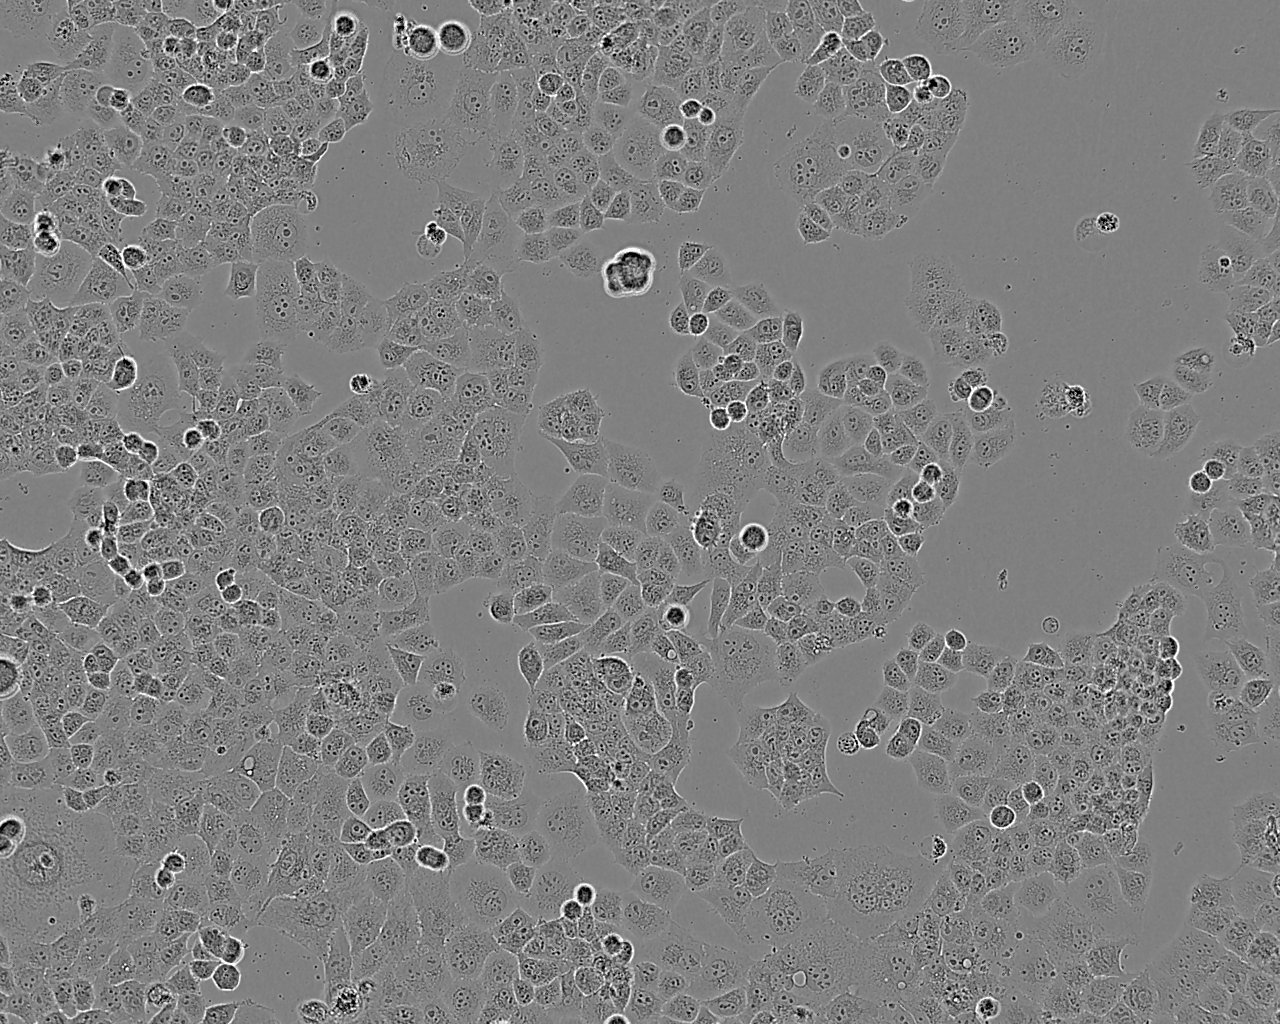 SNU-520 Cells|人胃癌可传代细胞系